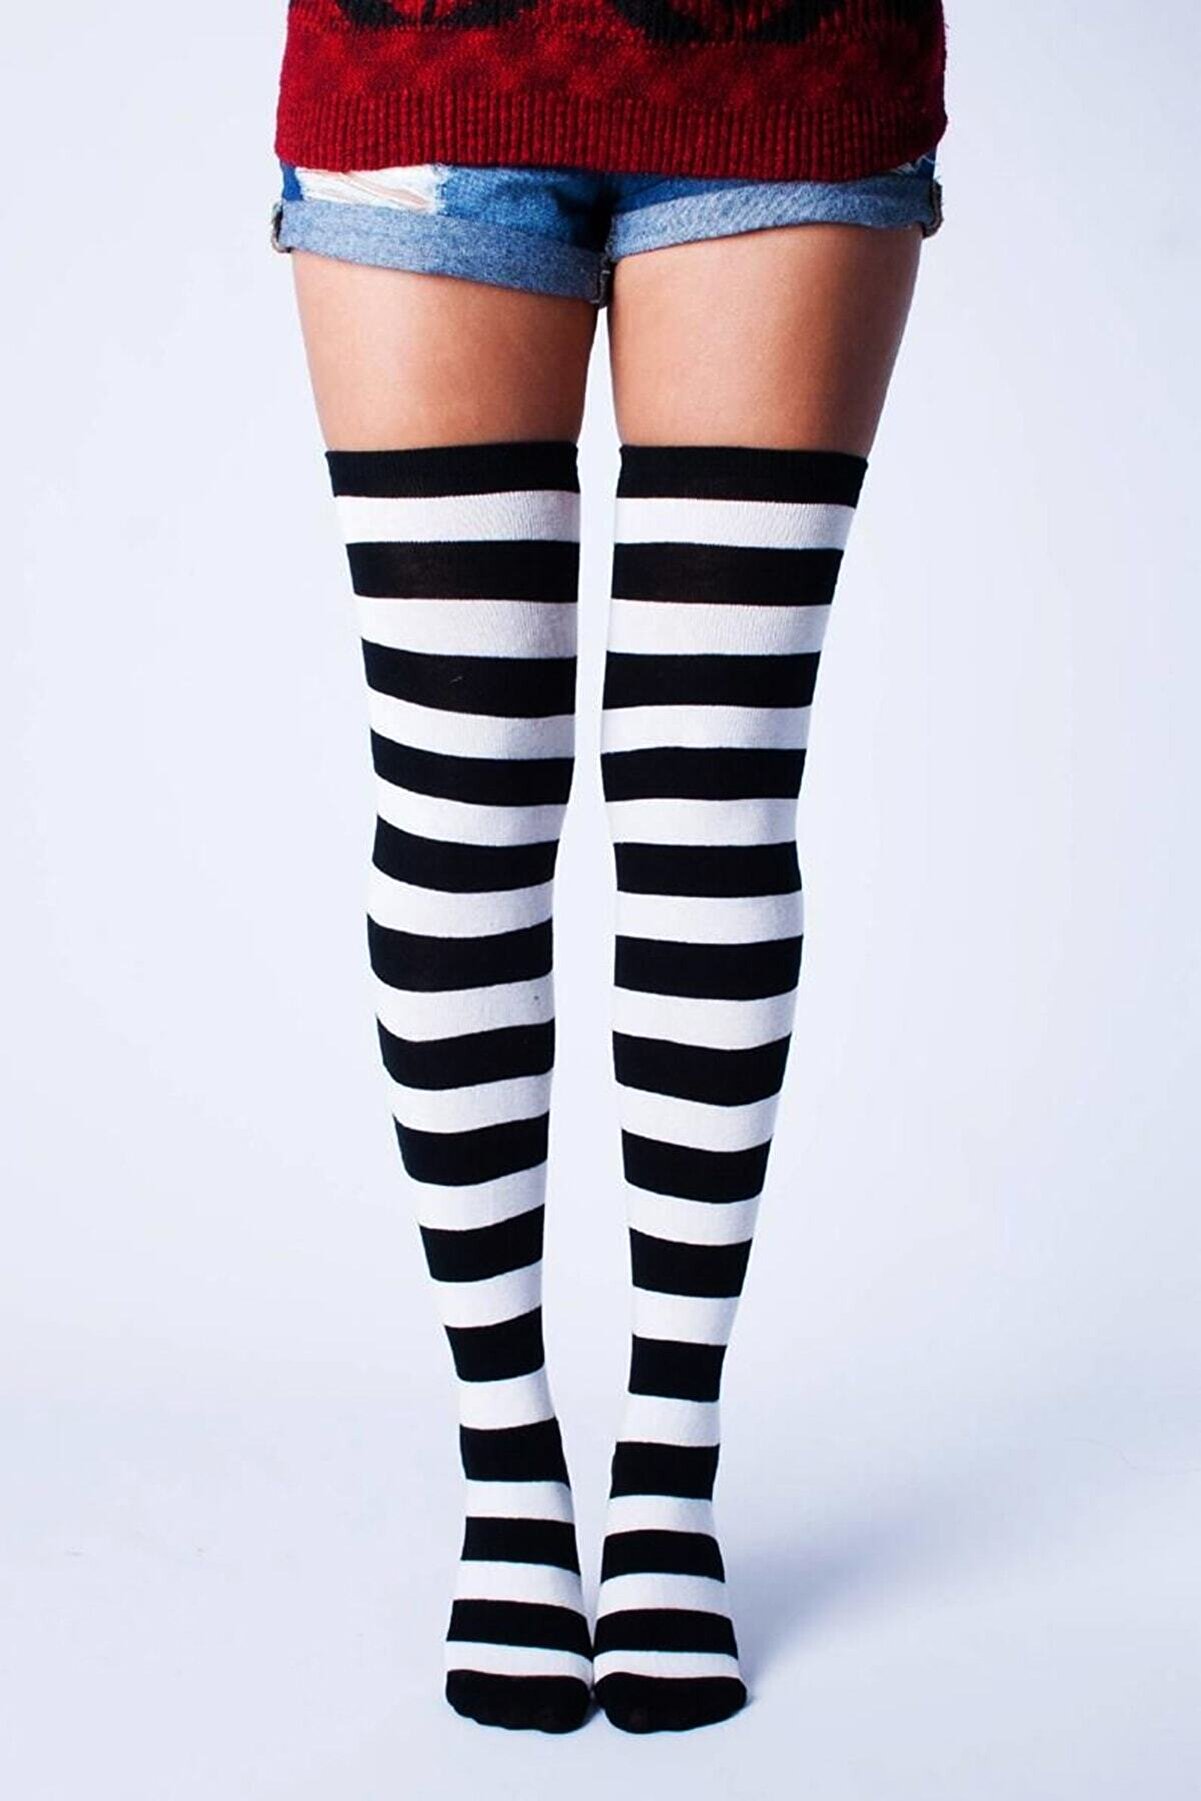 Design Socks Kadın Siyah Beyaz Çizgili Pamuklu Diz Üstü Çorap - Desen Çorap